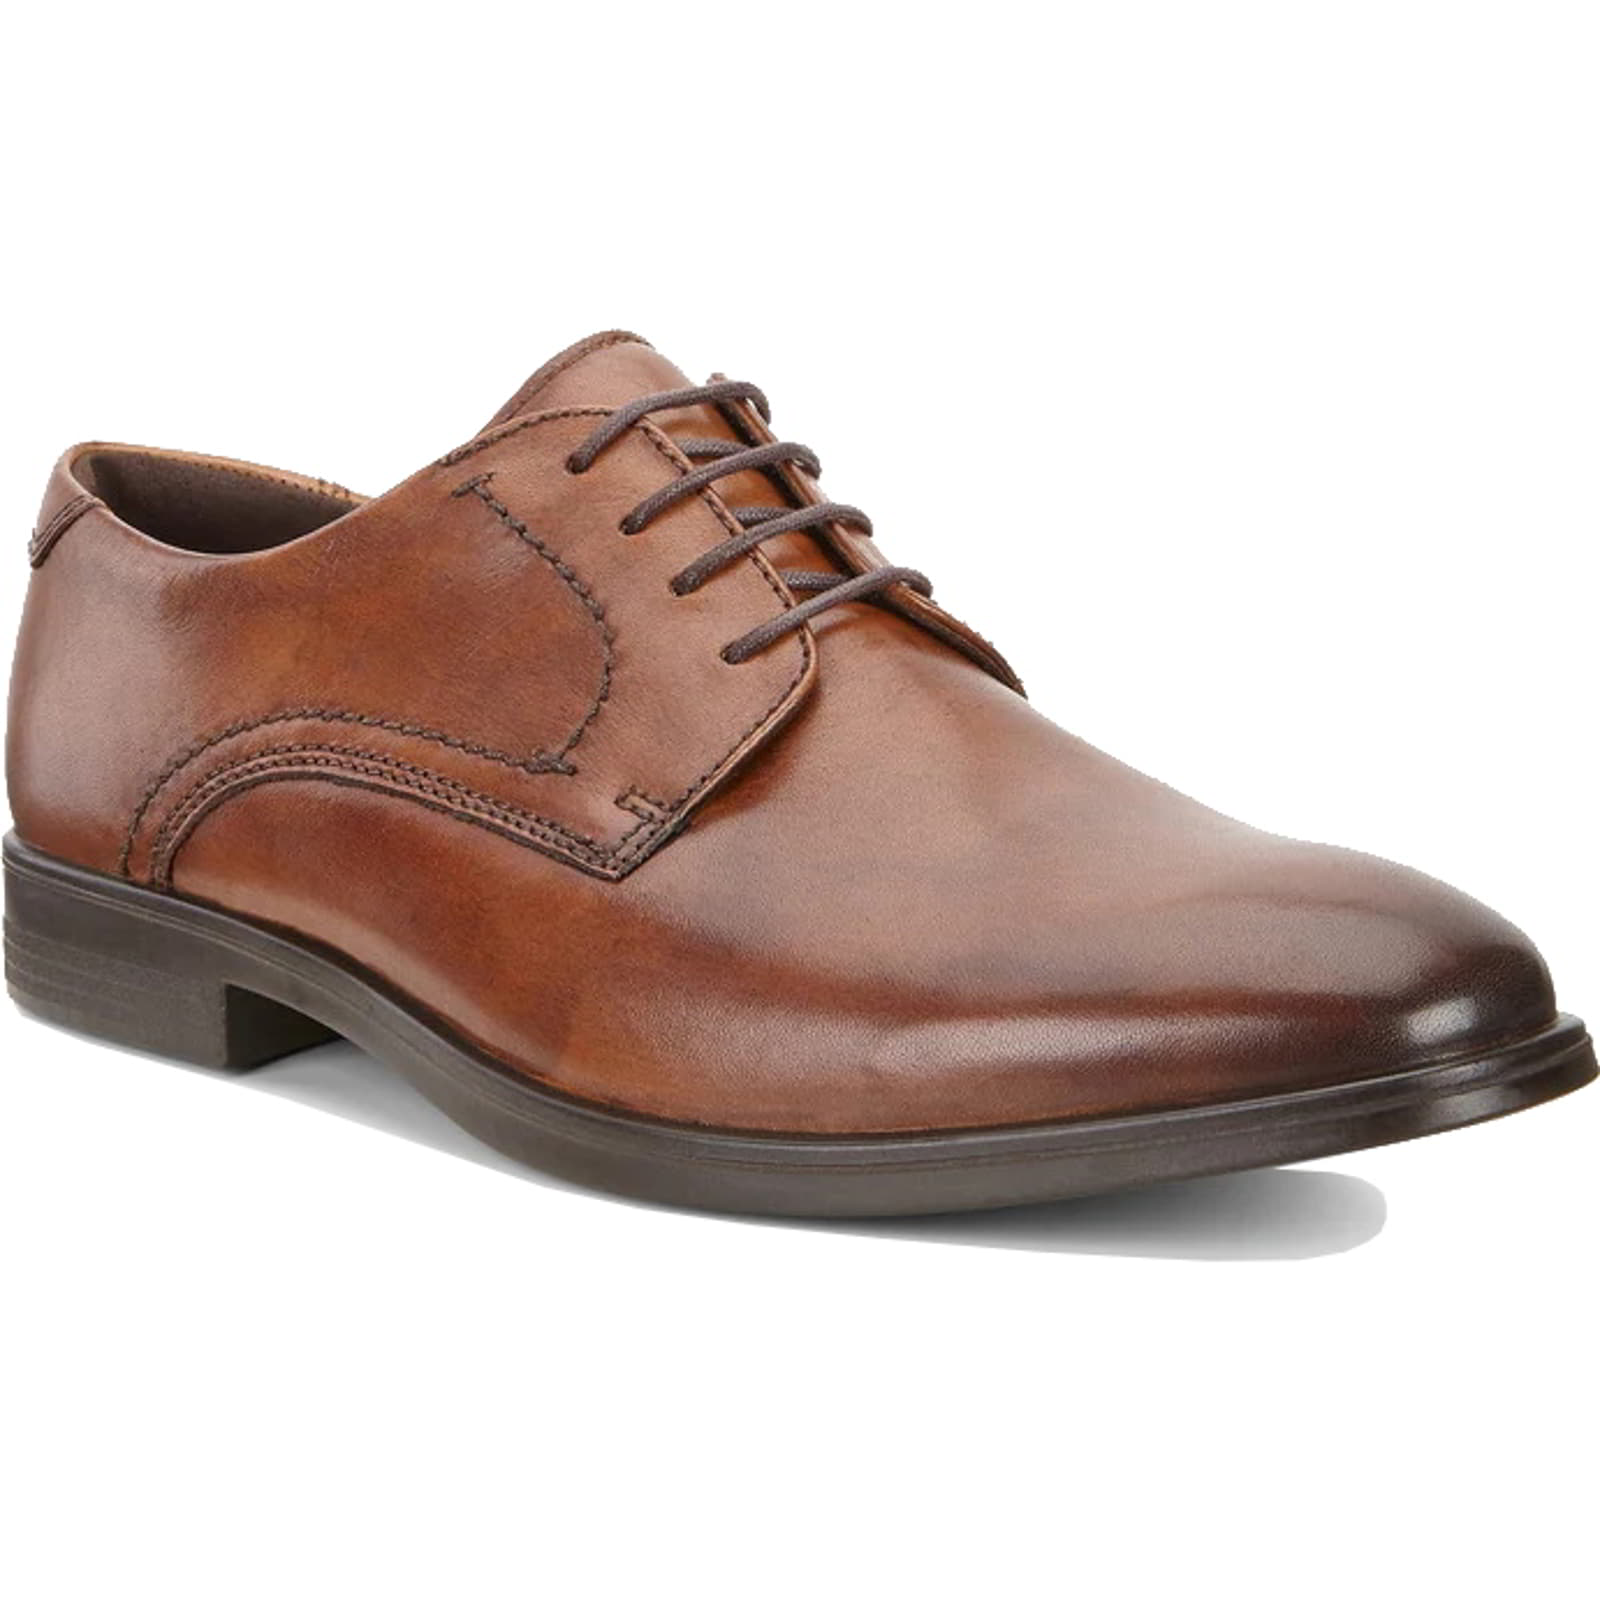 Ecco Melbourne Men's Shoes | Leather Derby Shoes Oxford Shoes - UK 12-12.5 / EU 47